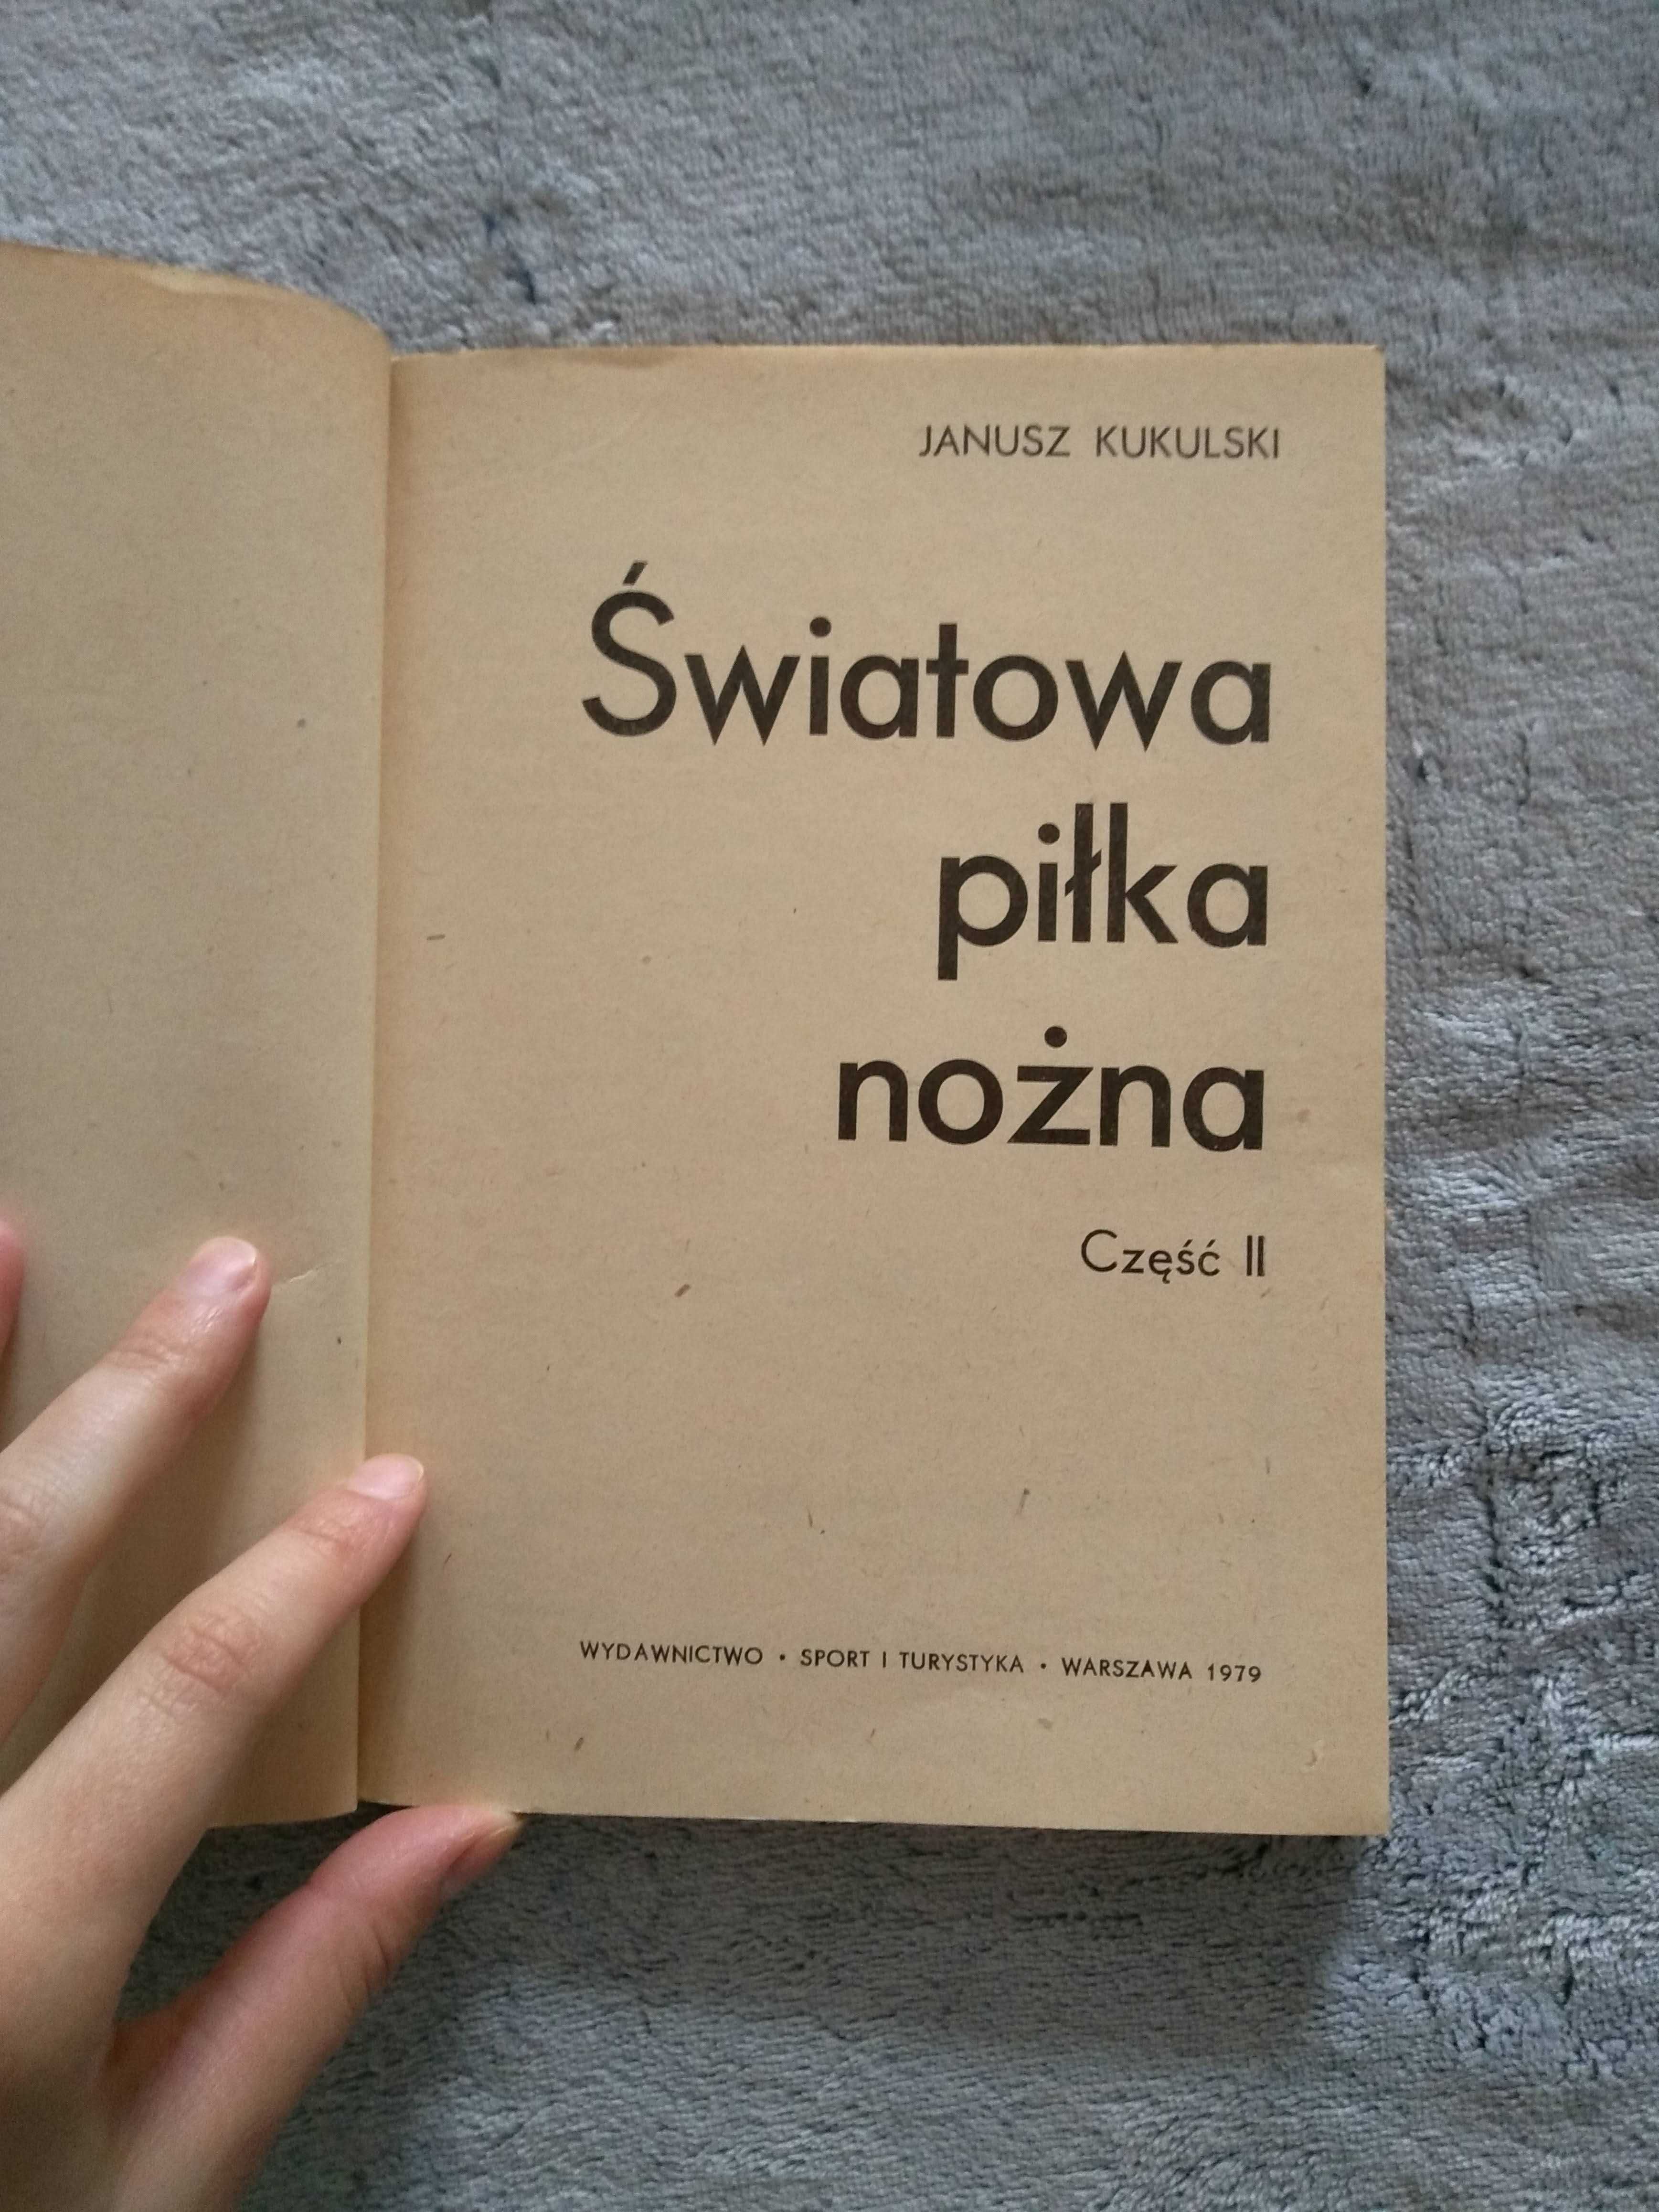 Książka "Światowa piłka nożna" Janusz Kukulski, 79 rok